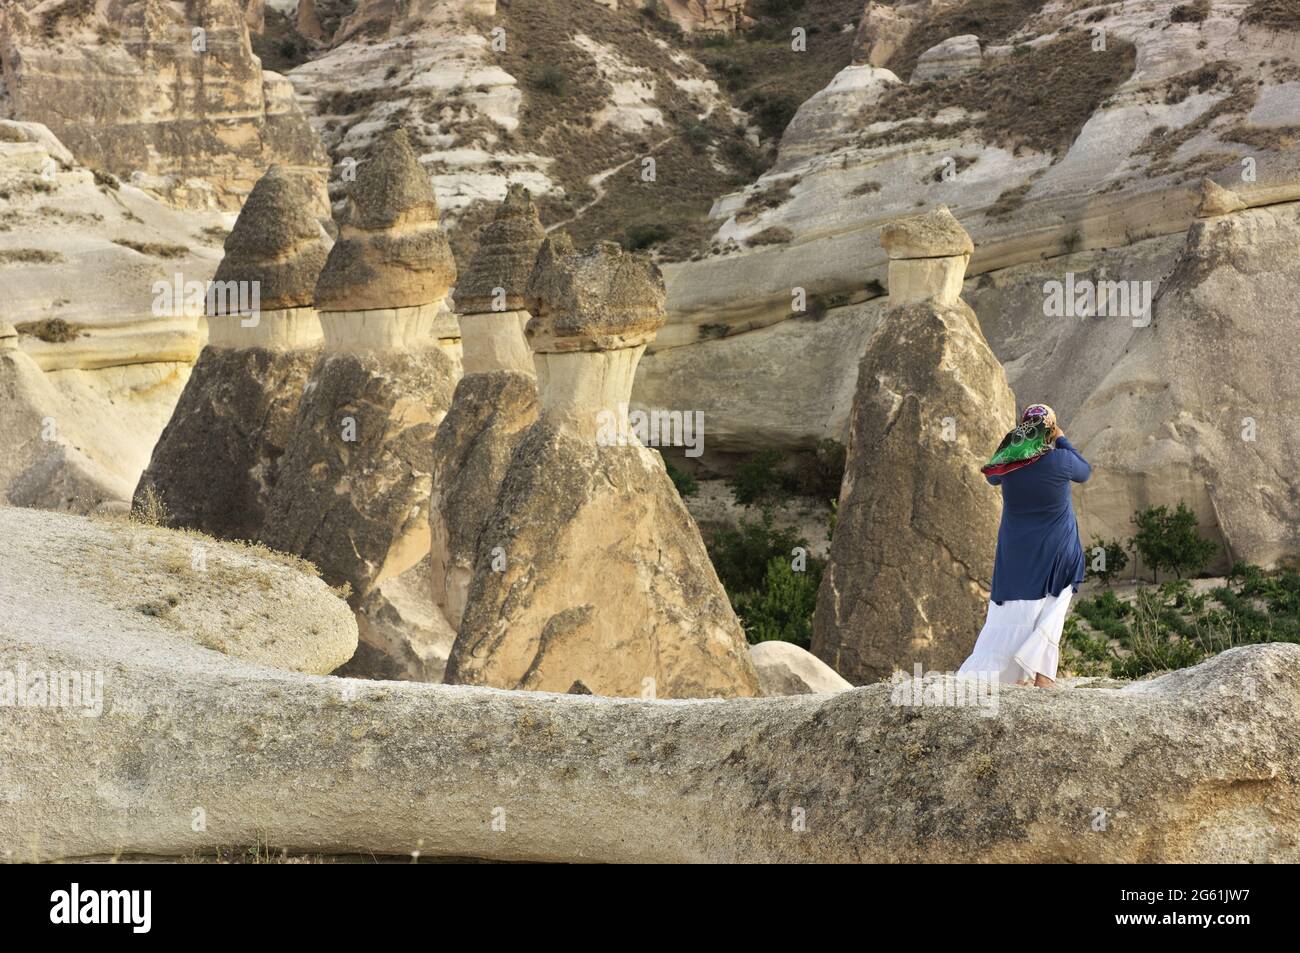 Un souvenir photo des cheminées de fées dans la vallée de Zelve point de repère du tourisme en Cappadoce femme musulmane prenant des photos d'une formation de roche en Turquie Banque D'Images